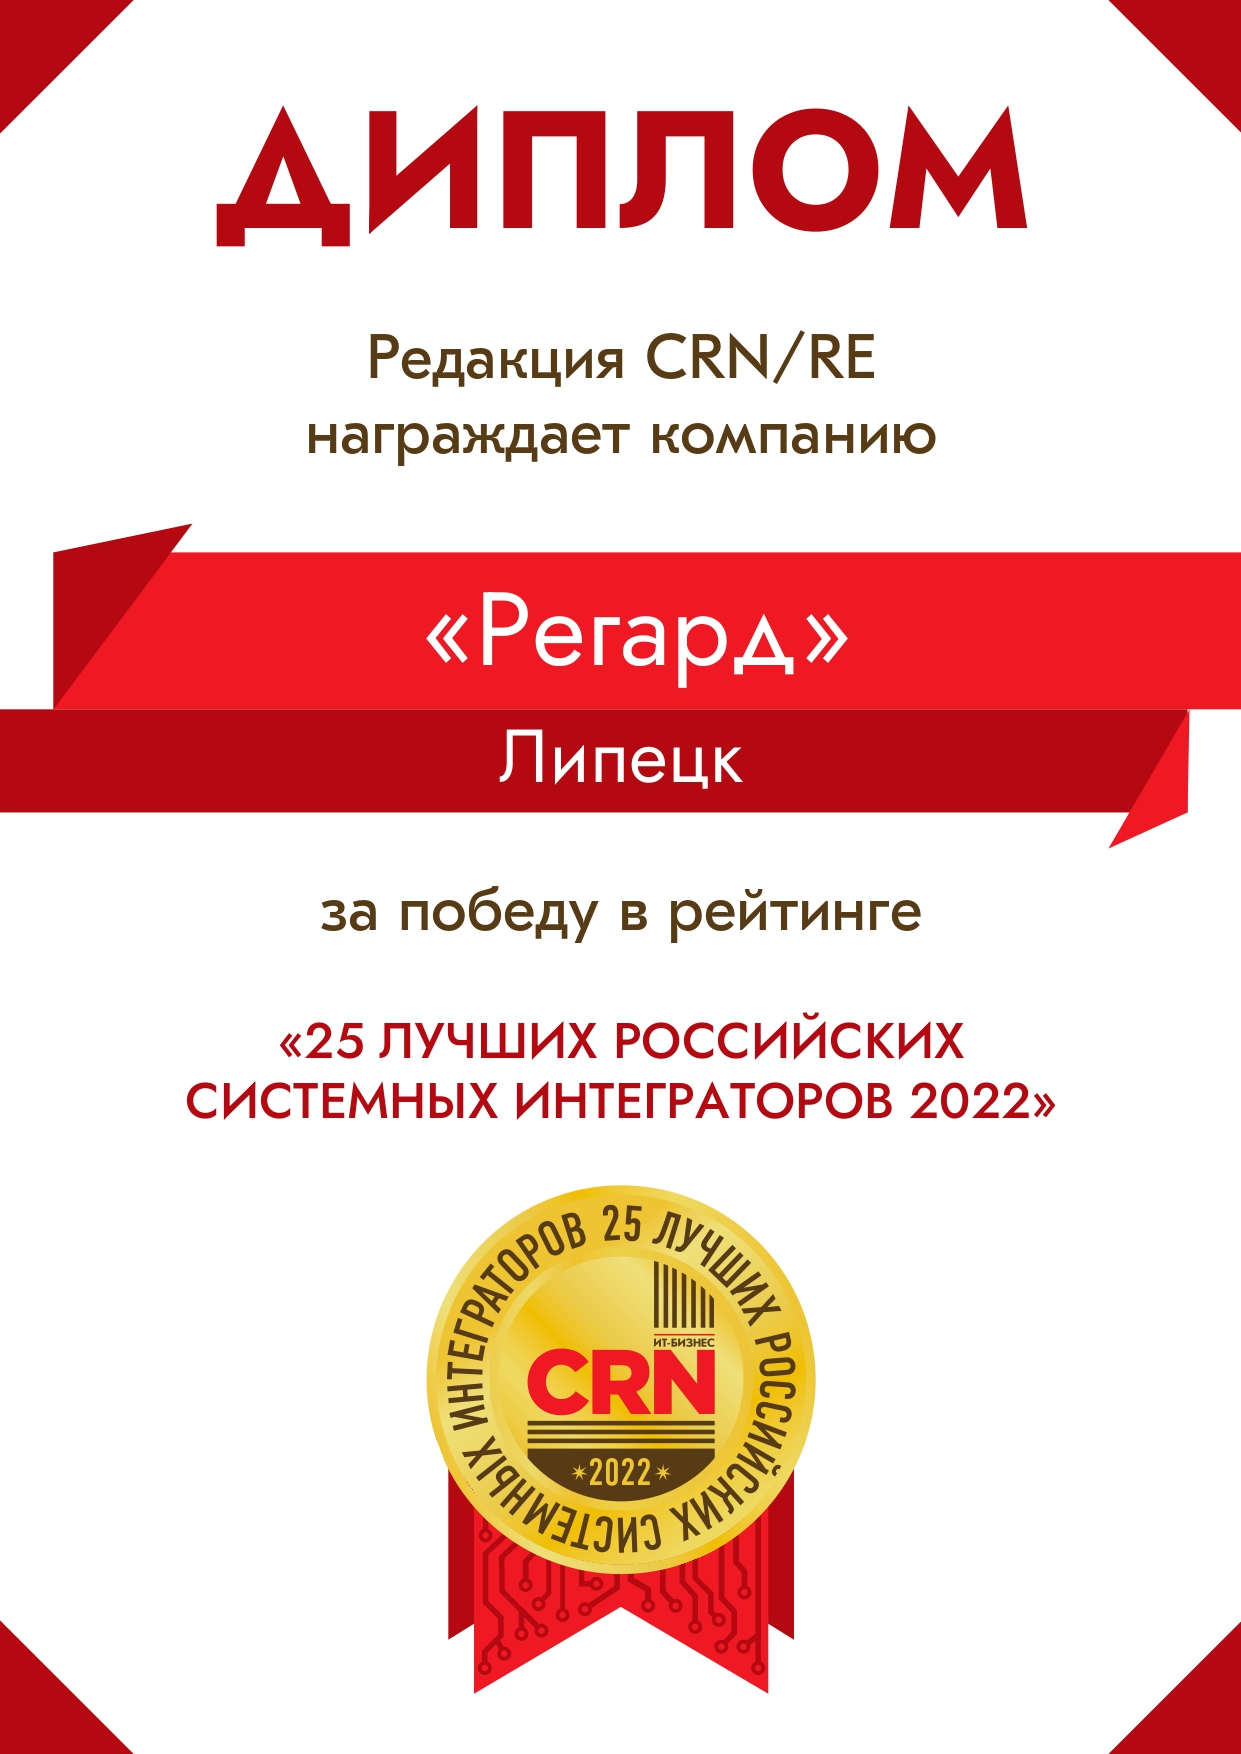 Победитель рейтинга CRN/RE 2022